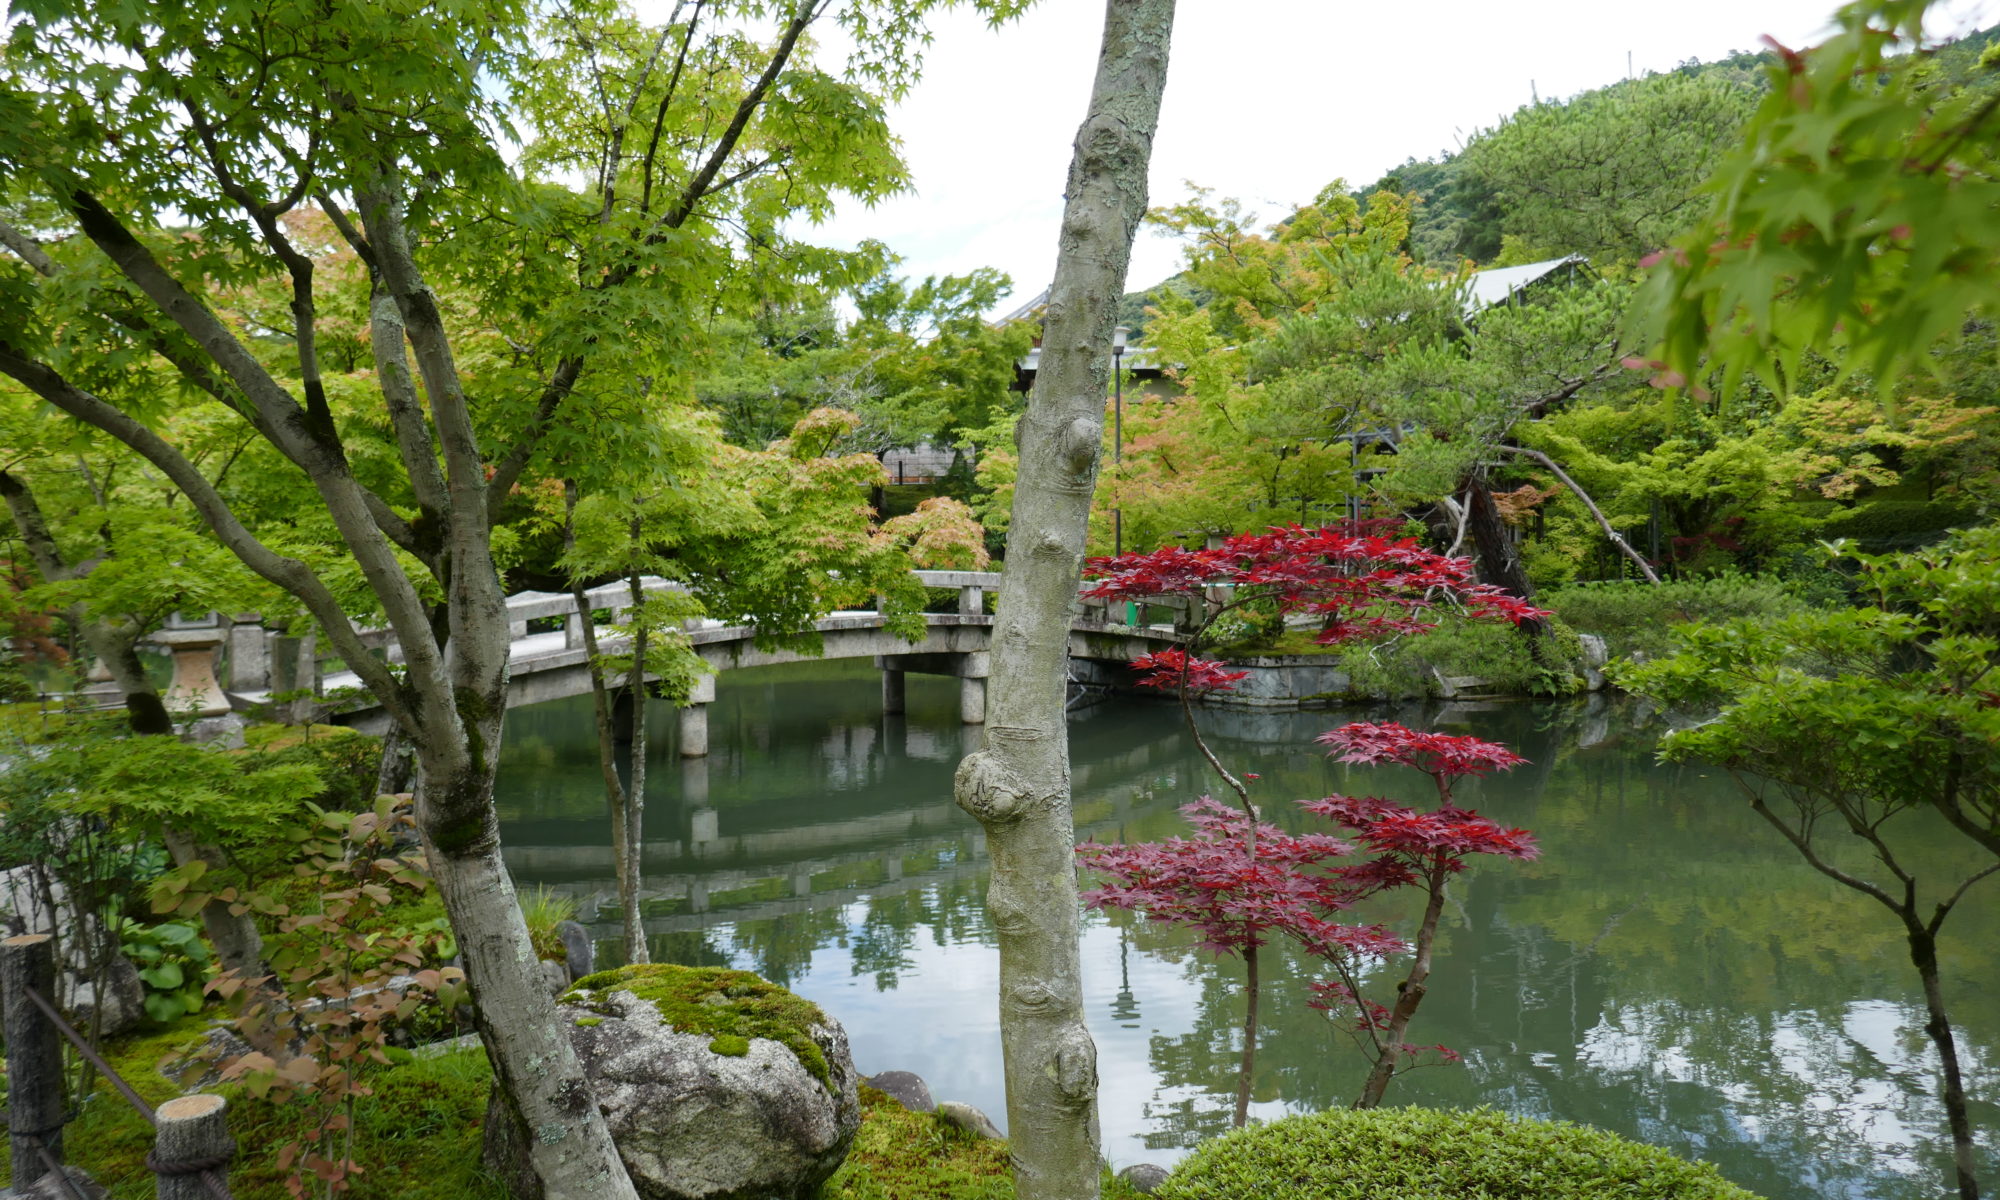 Eikando Temple Garden